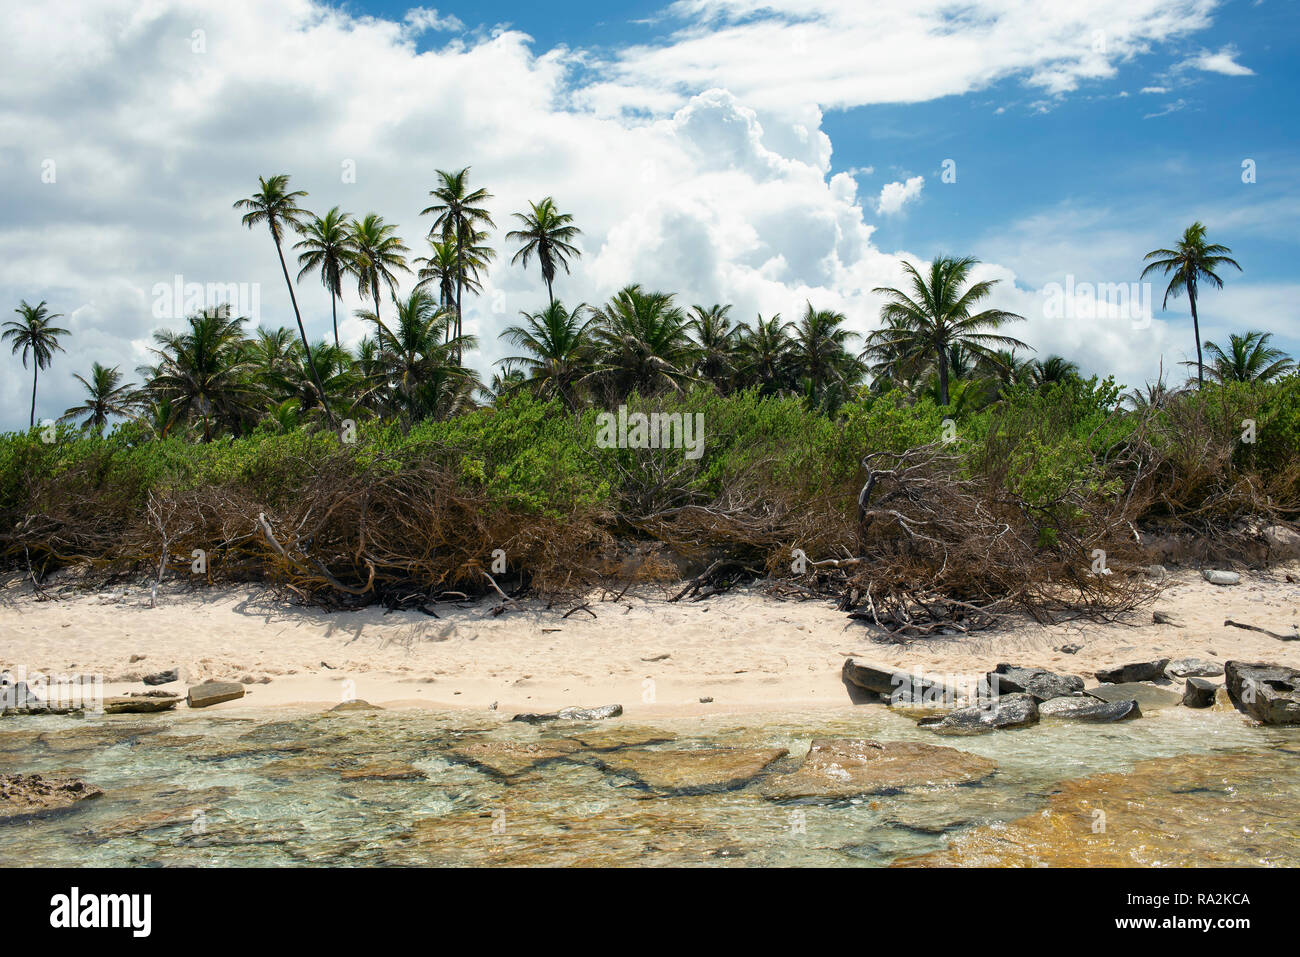 Karibik Strand mit Rock Steine, Sand und Palmen. Johnny Cay, die Insel San Andrés, Kolumbien. Okt 2018 Stockfoto